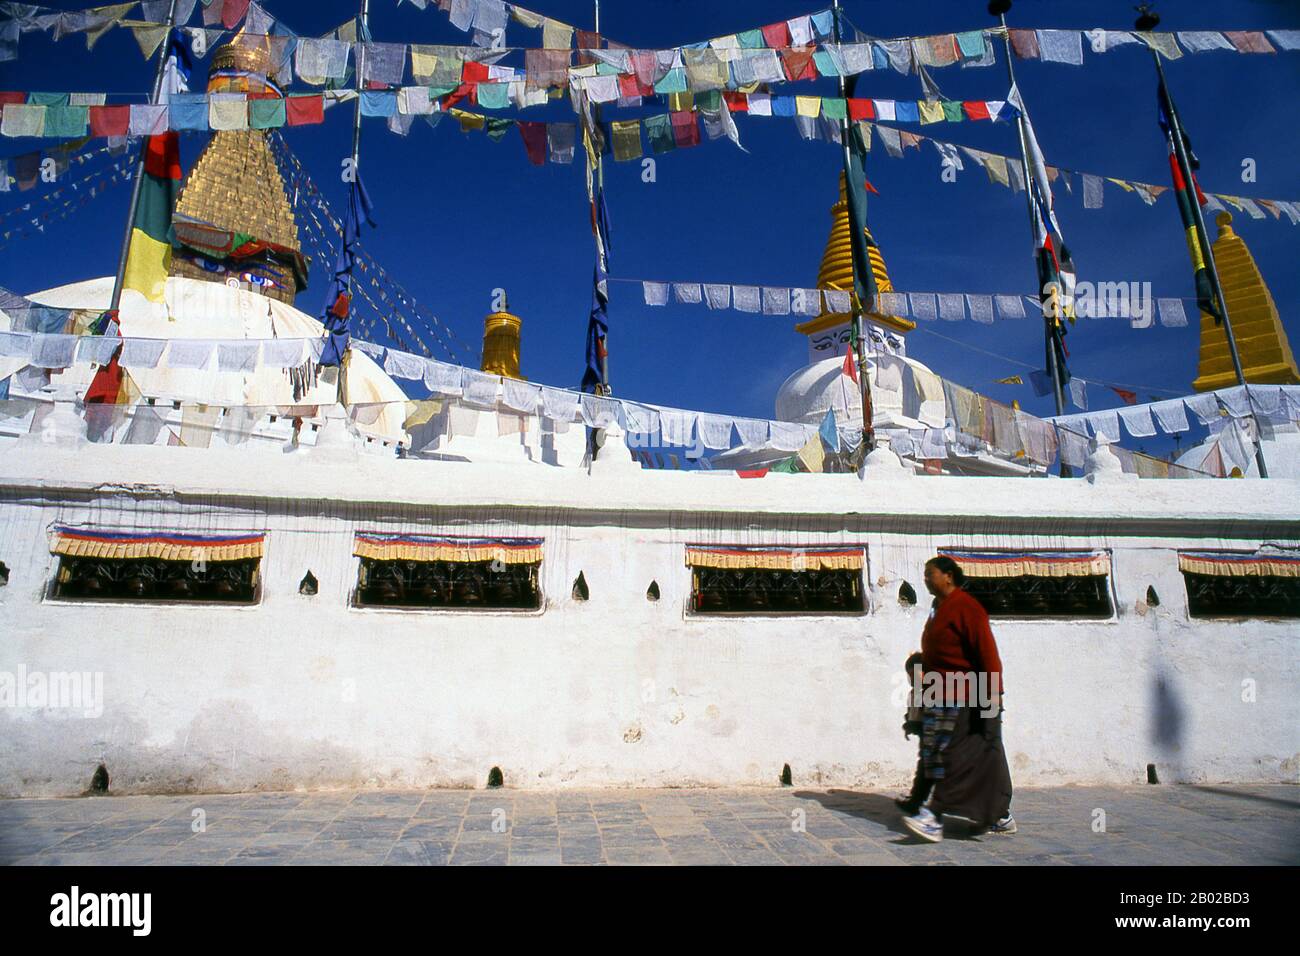 Situato esattamente nel siddhi, una zona di potere soprannaturale dove dimorano e desiderano le divinità guardiane, Bodhnath si trova a soli sei chilometri a est di Kathmandu, lungo la lunga e antica strada commerciale per Lhasa. Conosciuta dai tibetani semplicemente come Chorten Chempo, o "Great Stupa", è stata la Mecca dei tibetani in esilio sin dall'occupazione cinese della loro patria nel 1950. Bodhnath si è anche sviluppato come centro per lo studio del buddismo tibetano, numerosi monasteri essendo stati costruiti in sostituzione effettiva di quelli distrutti dalle Guardie rosse di Mao Tse-tung. Le origini di Bodhnath sono l Foto Stock